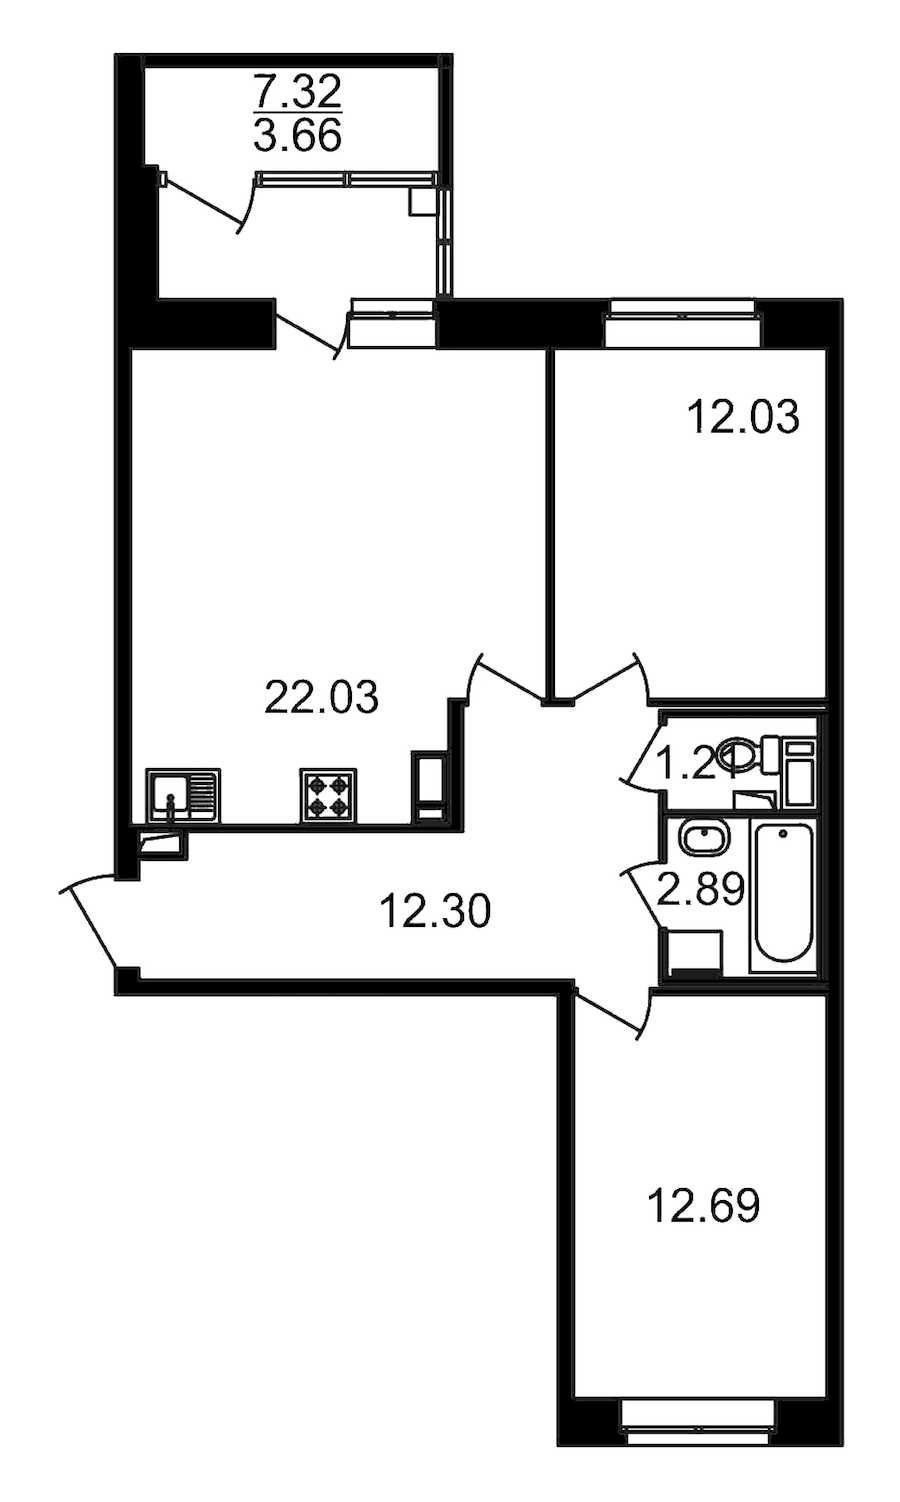 Двухкомнатная квартира в : площадь 70.47 м2 , этаж: 11 – купить в Санкт-Петербурге